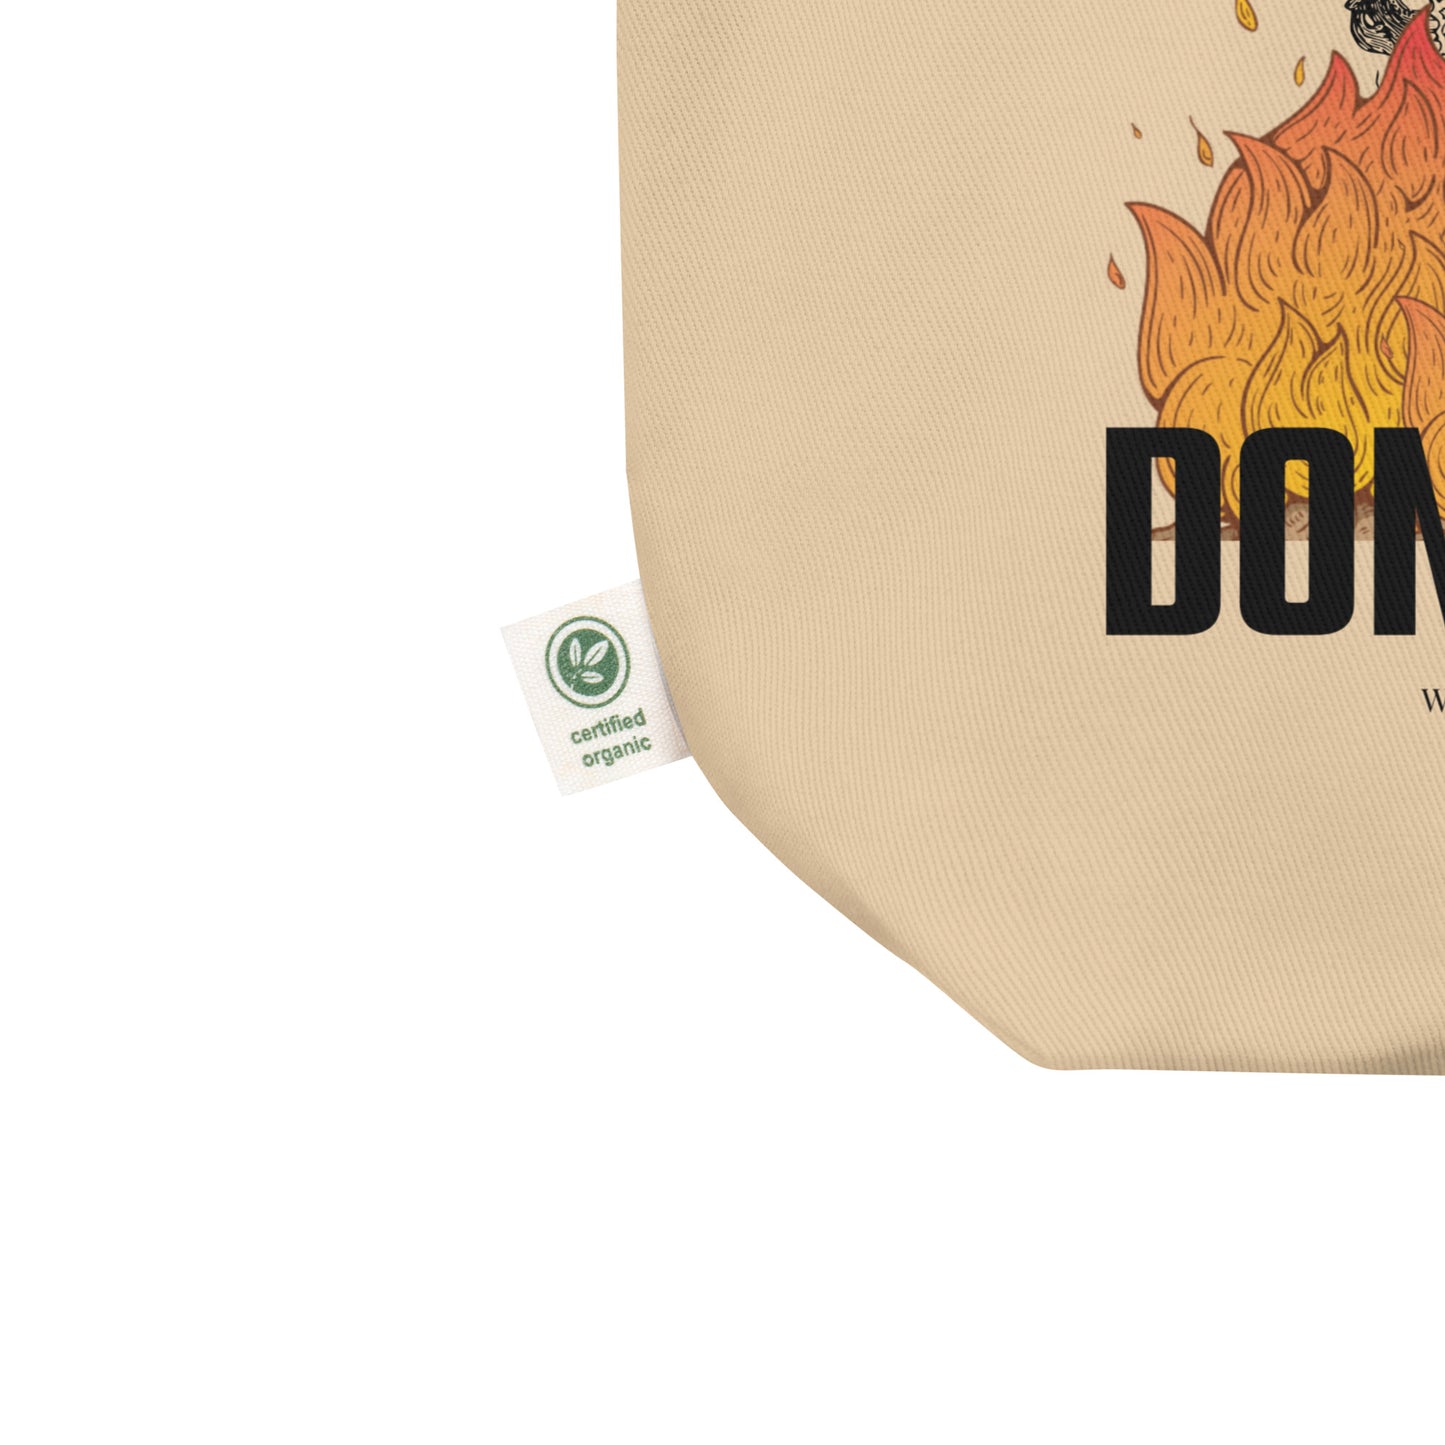 Don Giovanni Eco Tote Bag